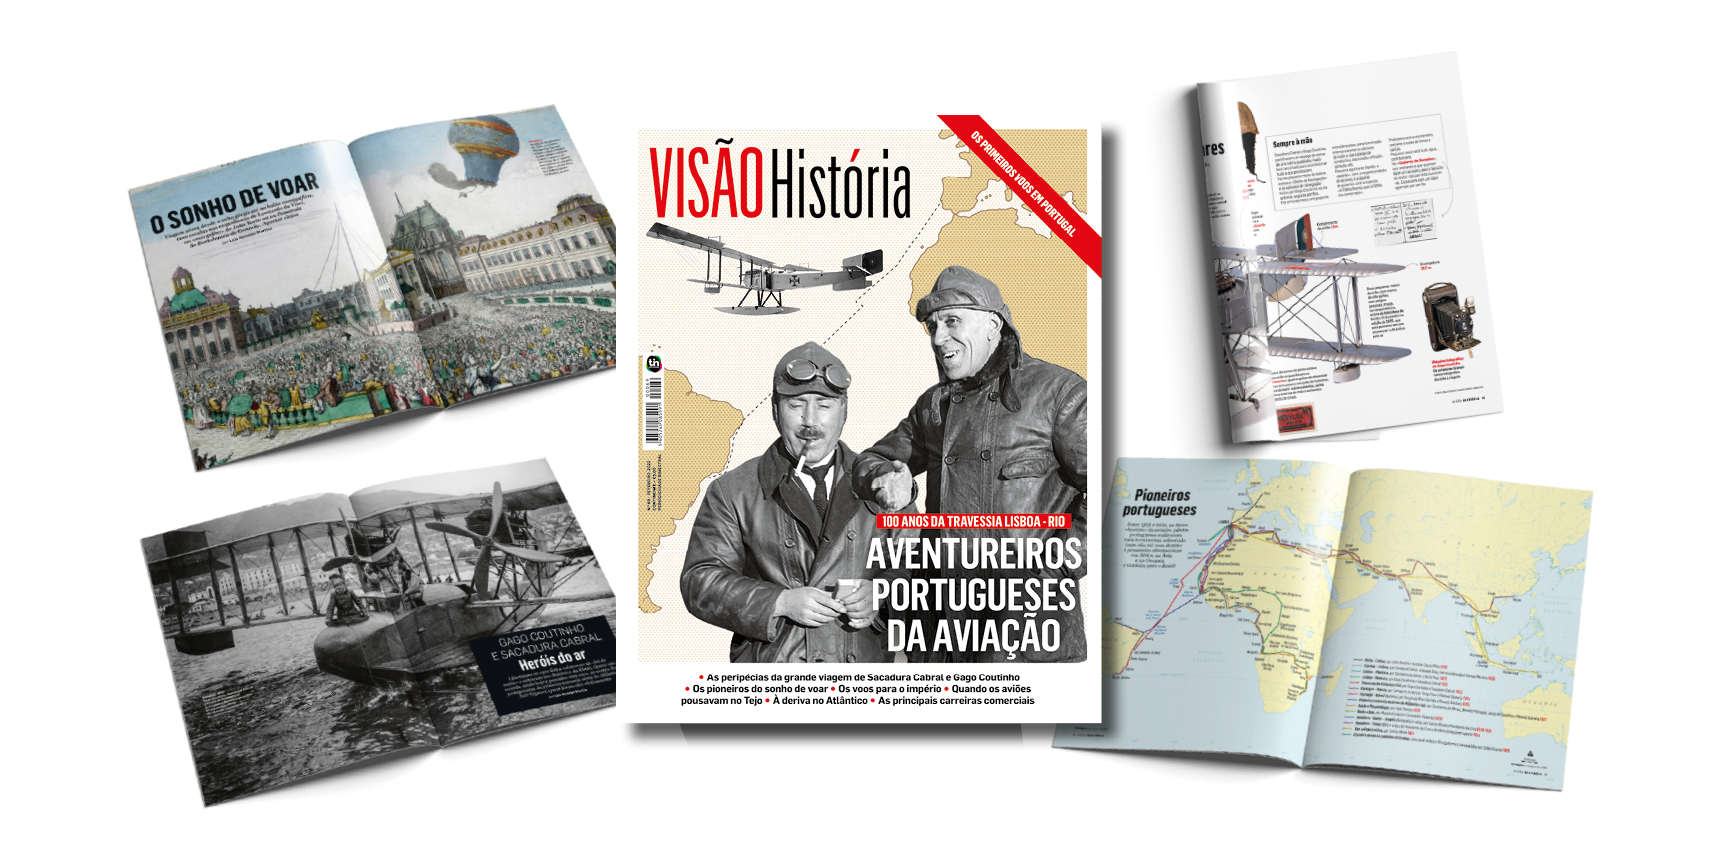 Os aventureiros portugueses da aviação na VISÃO História foto